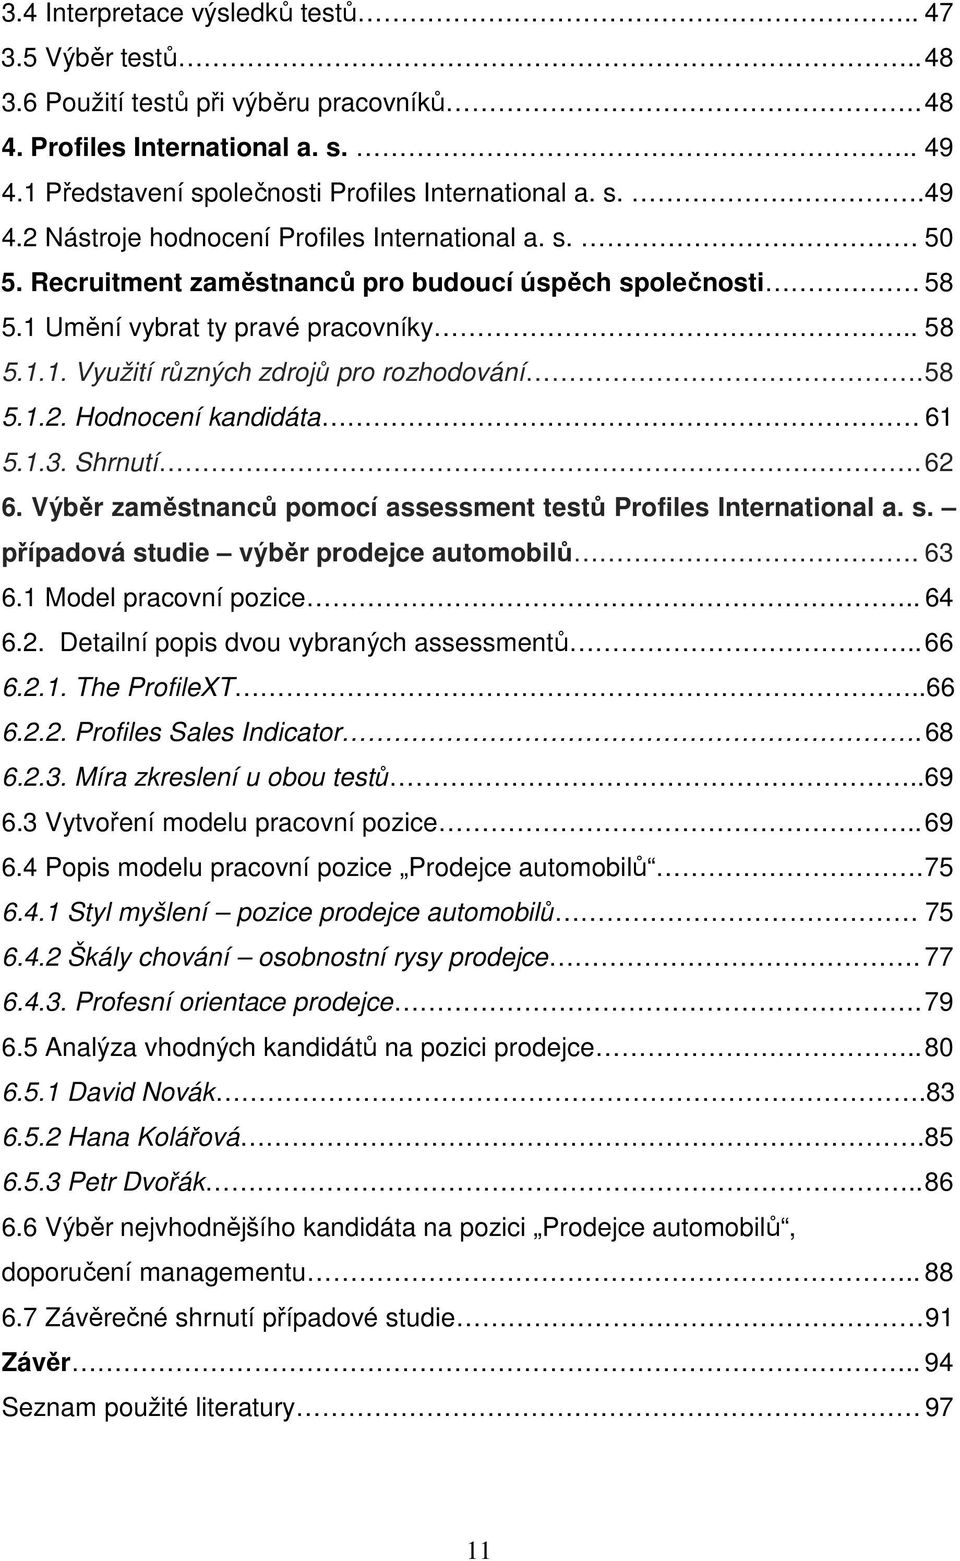 Shrnutí. 62 6. Výběr zaměstnanců pomocí assessment testů Profiles International a. s. případová studie výběr prodejce automobilů. 63 6.1 Model pracovní pozice.. 64 6.2. Detailní popis dvou vybraných assessmentů.